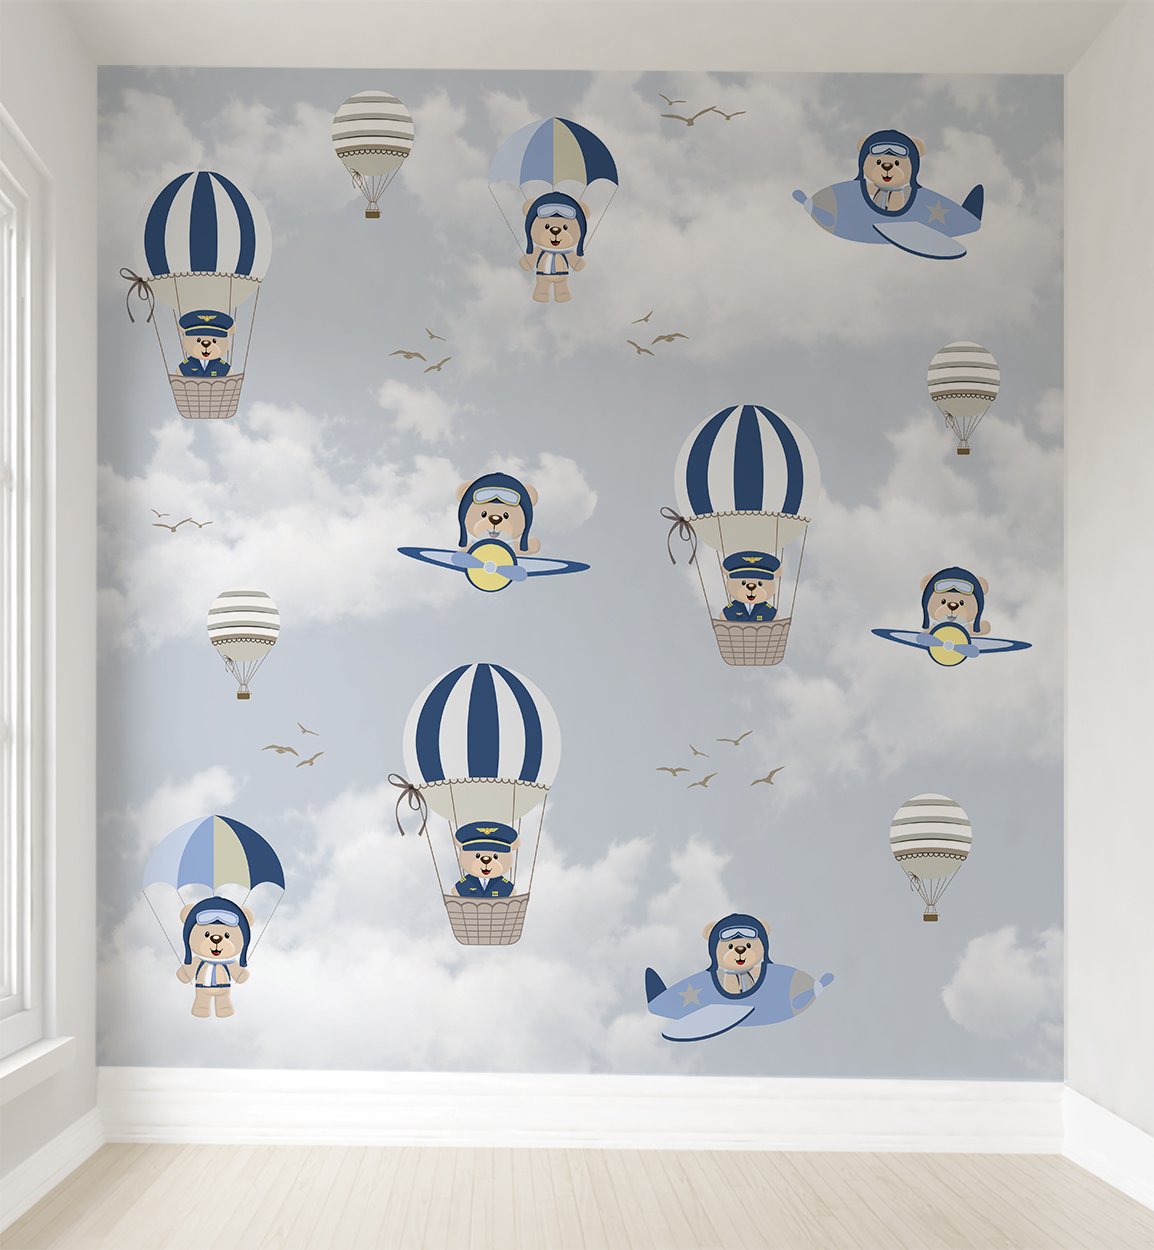 Papel de parede balão azul ursinho aviador infantil para quarto de bebê M² PP139 - 1